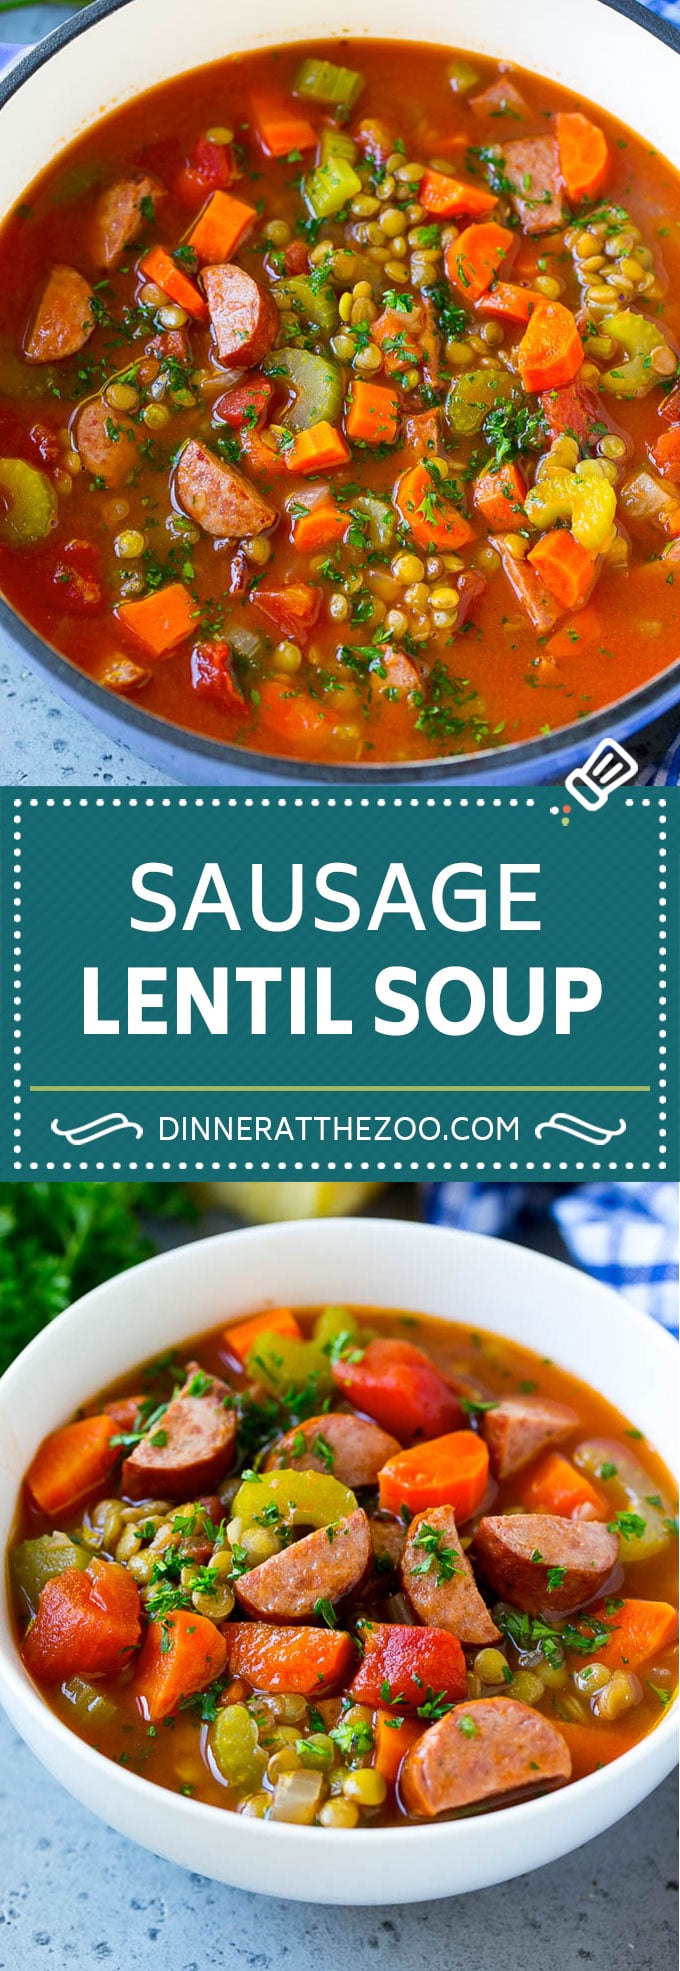 Lentil Soup Recipe | Sausage Lentil Soup #soup #lentils #sausage #dinner #glutenfree #dinneratthezoo